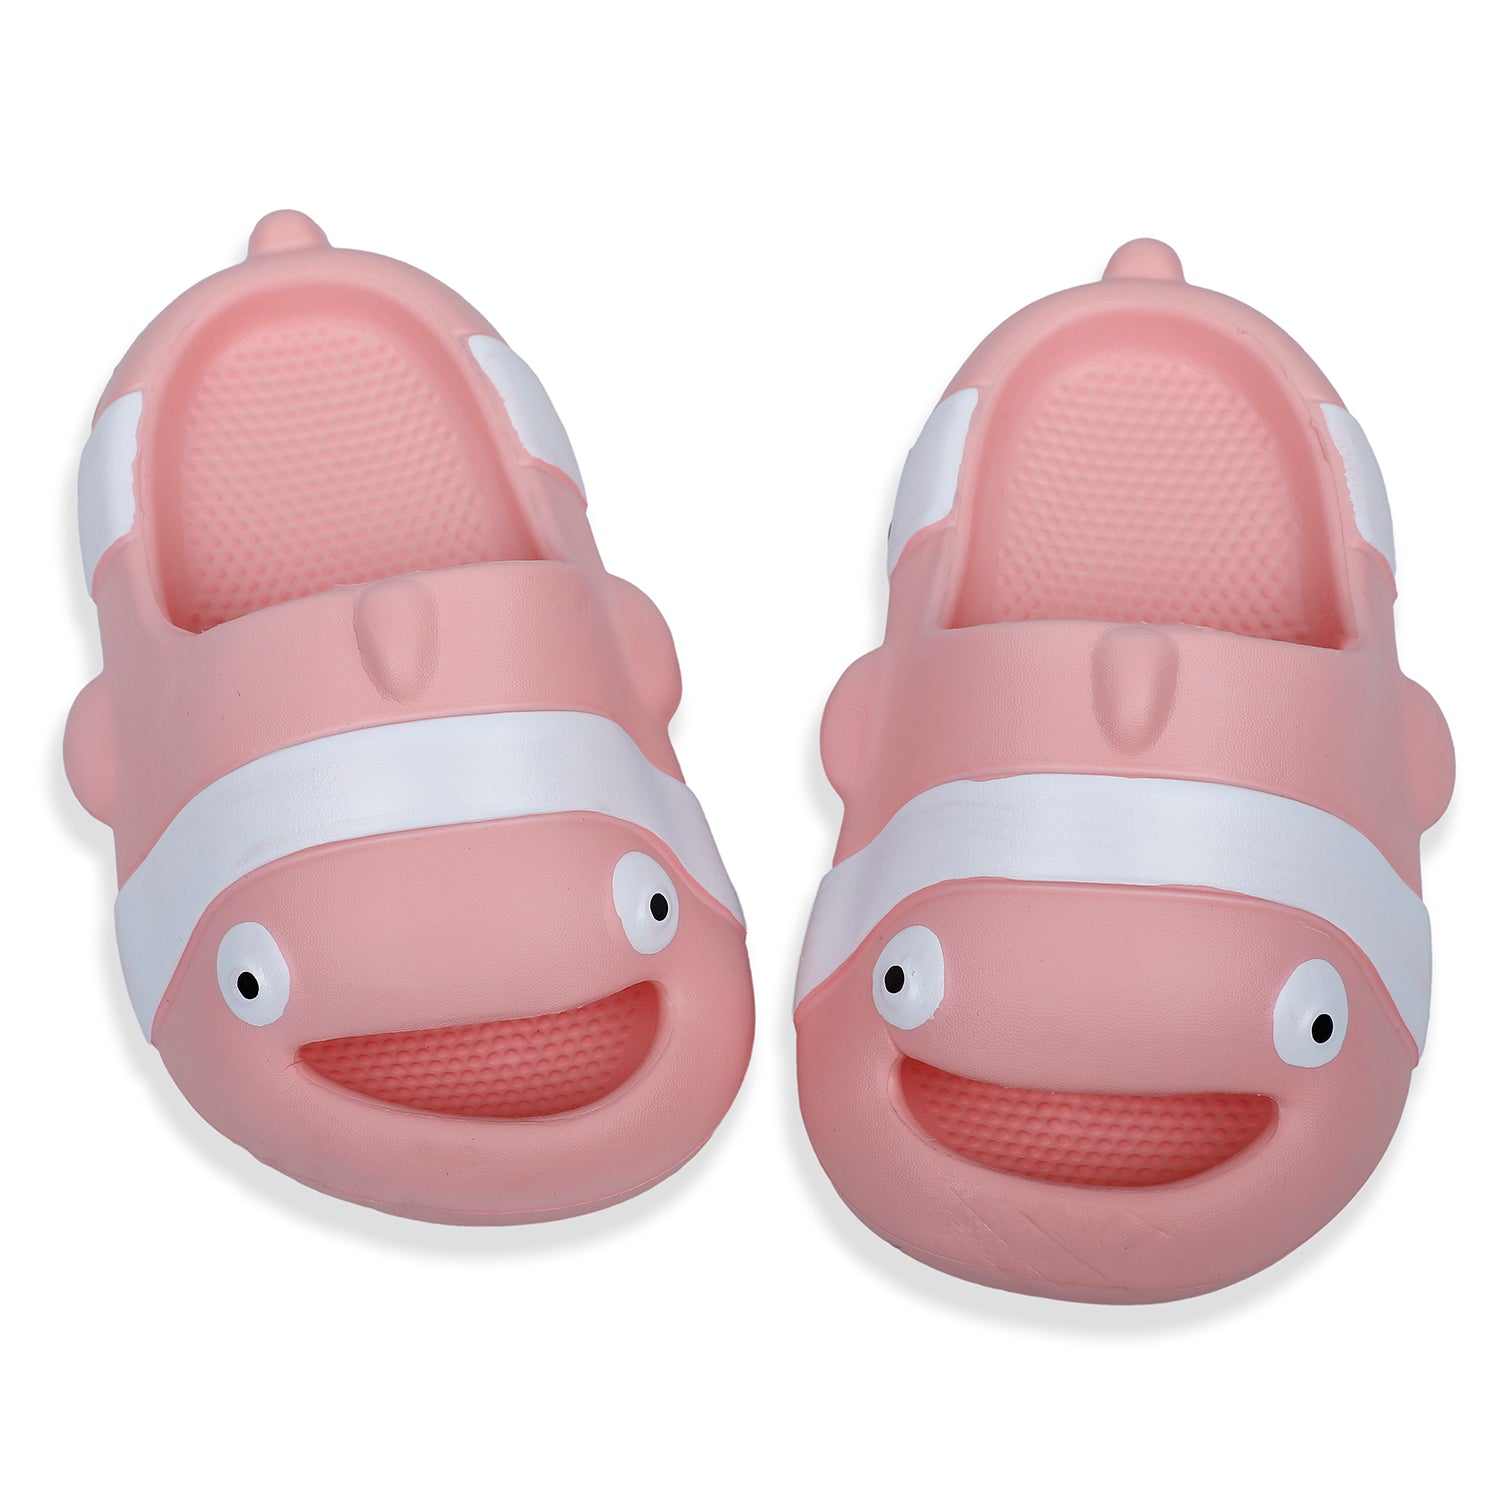 Baby Moo Nemo Waterproof Soft Slippers Anti-Skid Sliders - Pink - Baby Moo